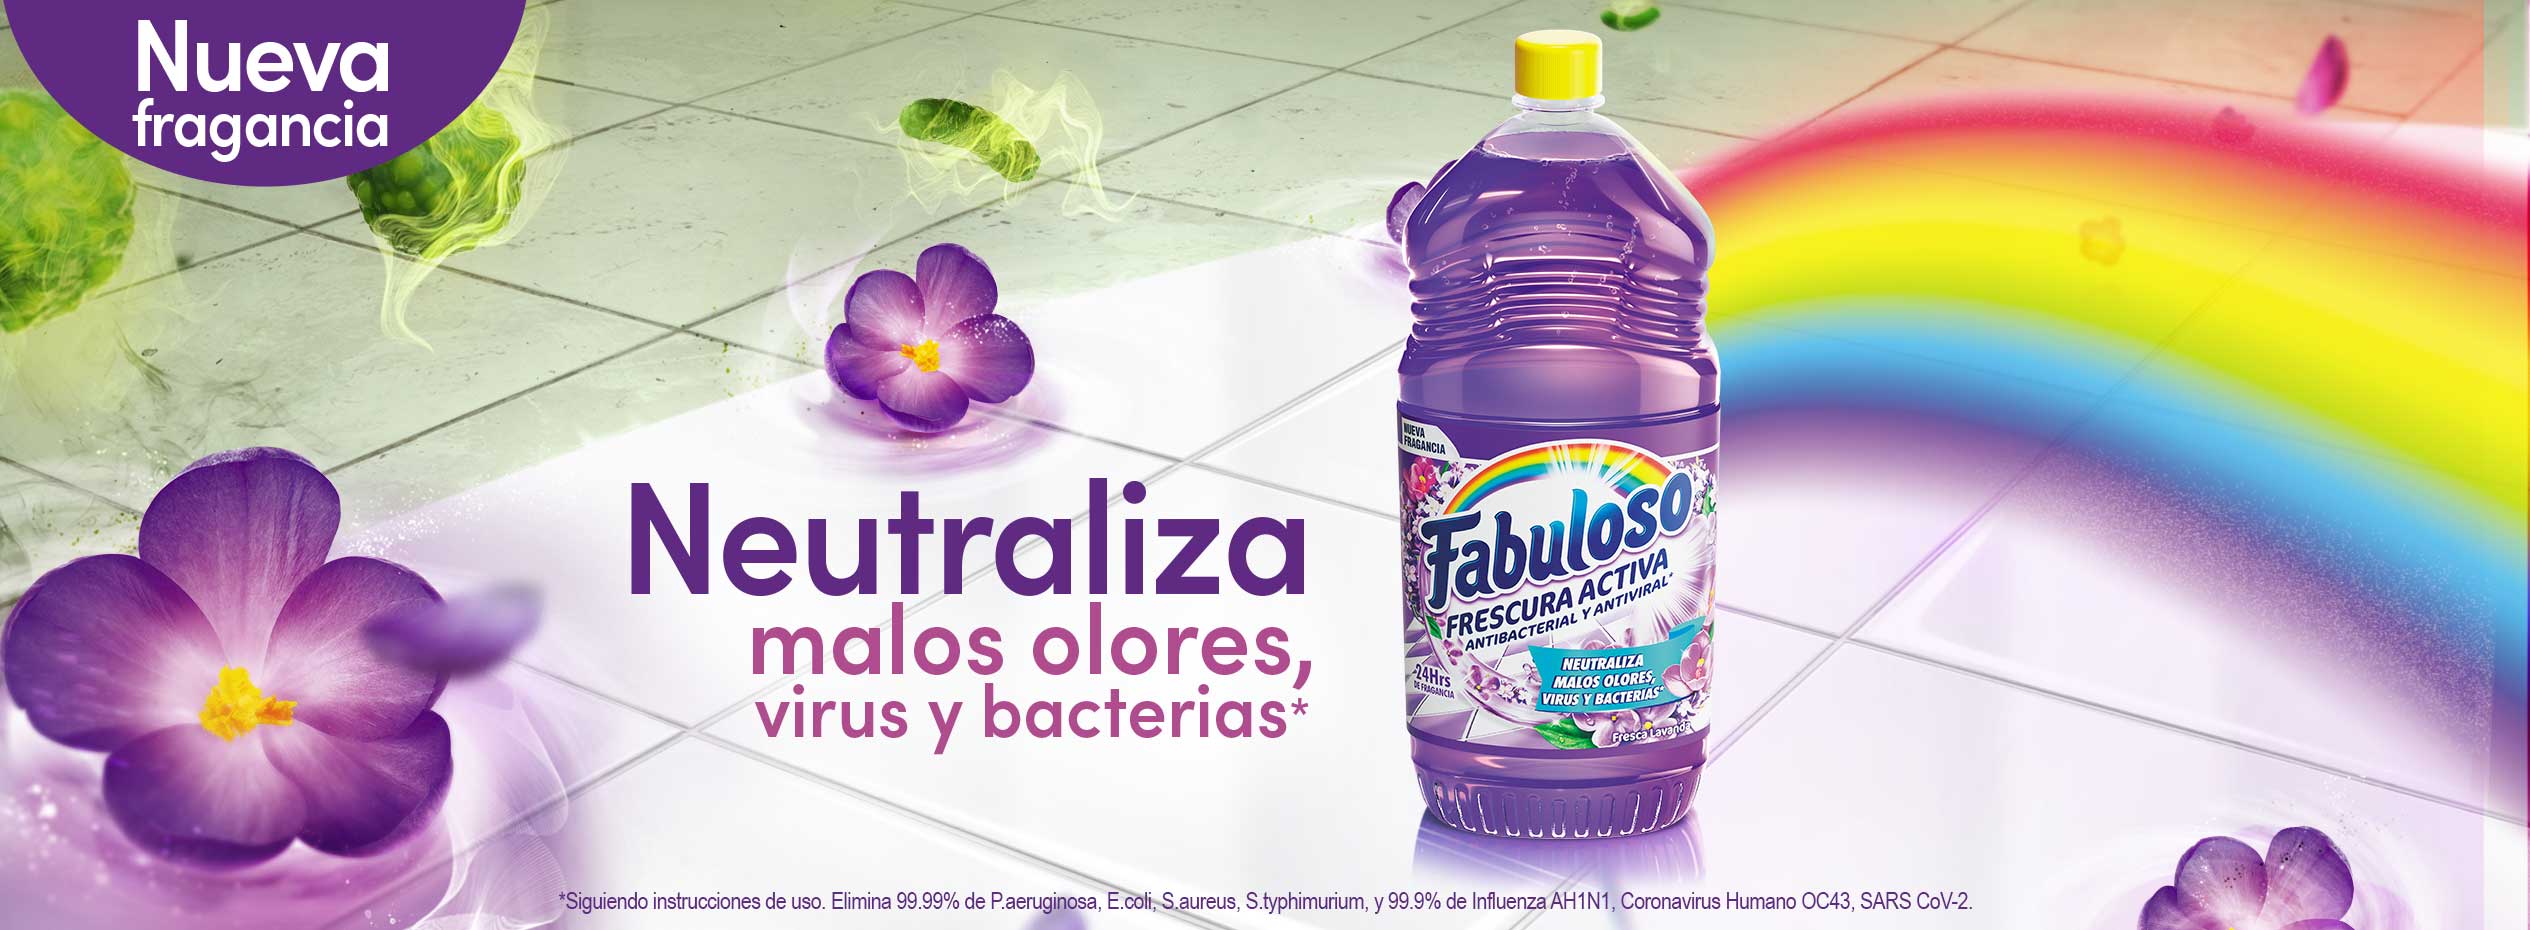 Fabuloso® Fresca Lavanda, neutraliza malos olores, virus y bacterias